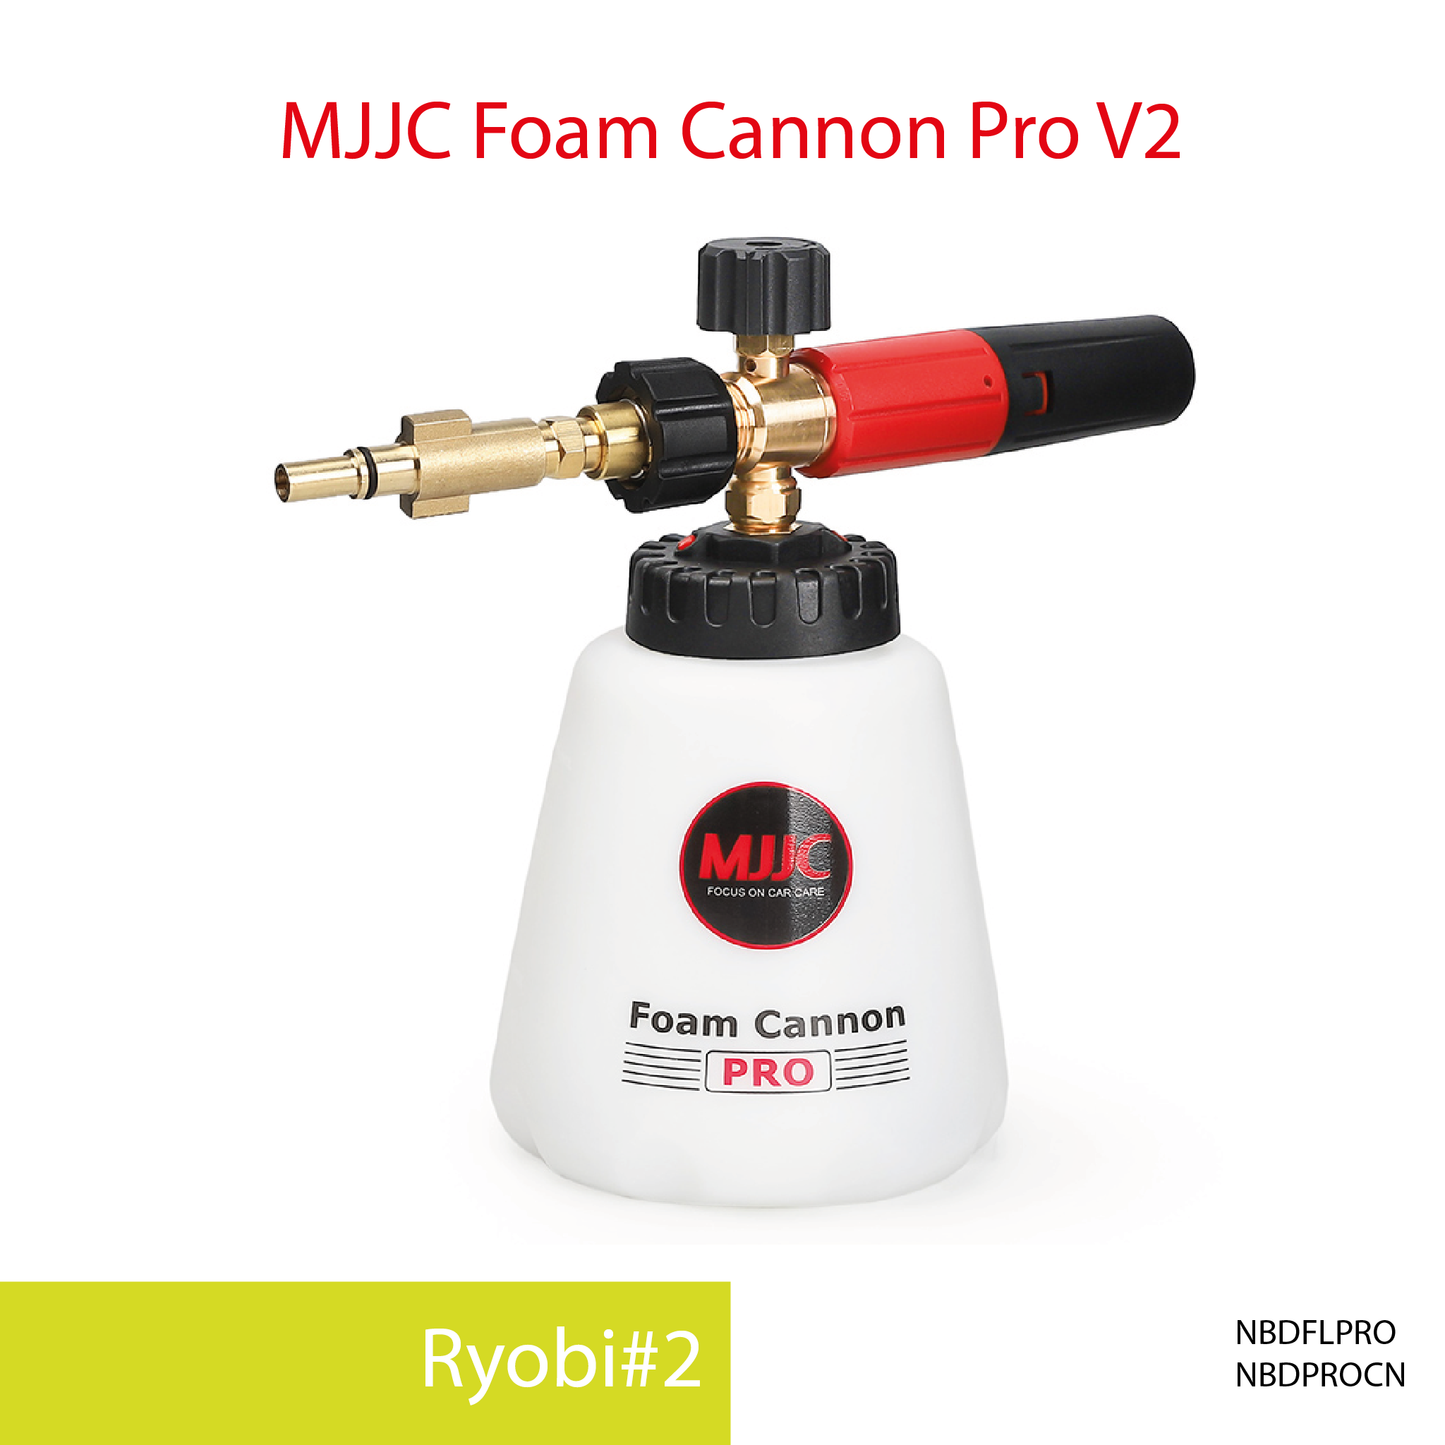 Ryobi pressure washer - MJJC Foam Cannon Pro V2 (Pressure Washer Snow Foam Lance Gun)